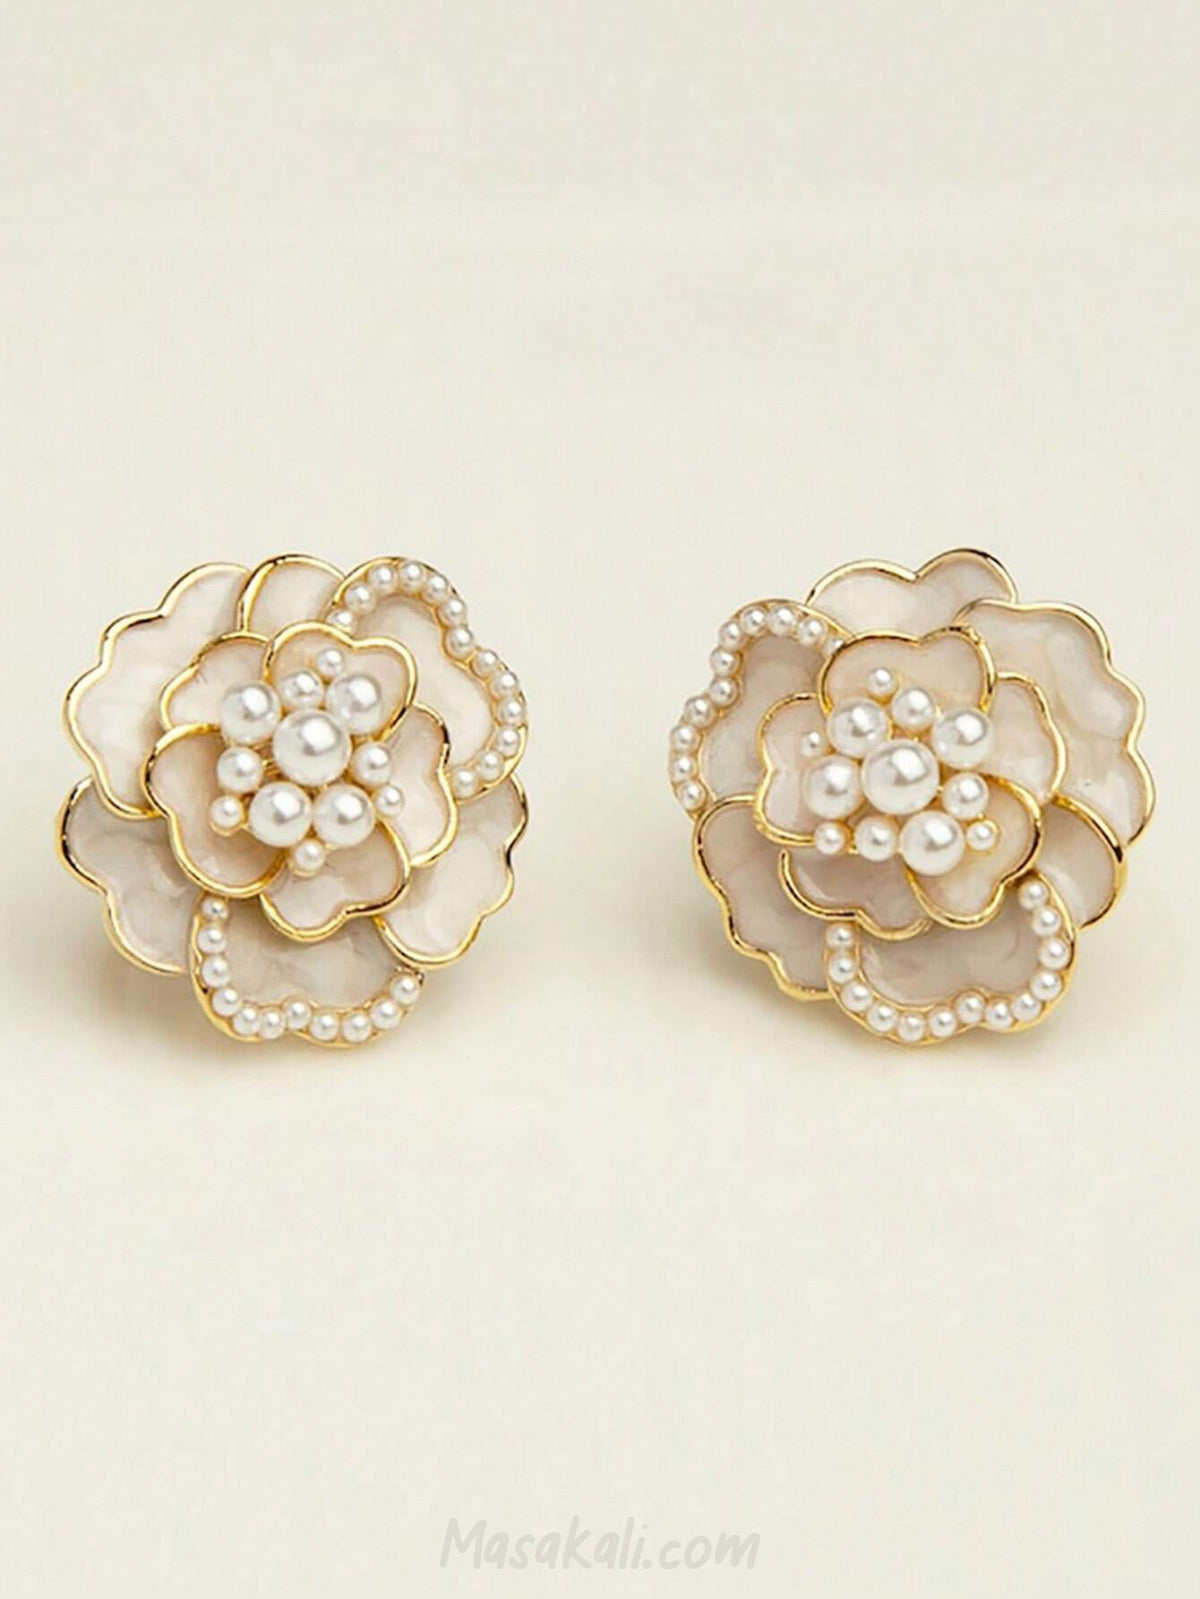 Masakali Camellia Flower Earrings Pearl Cream White Studs Korean Golden Enameled Earrings For Women